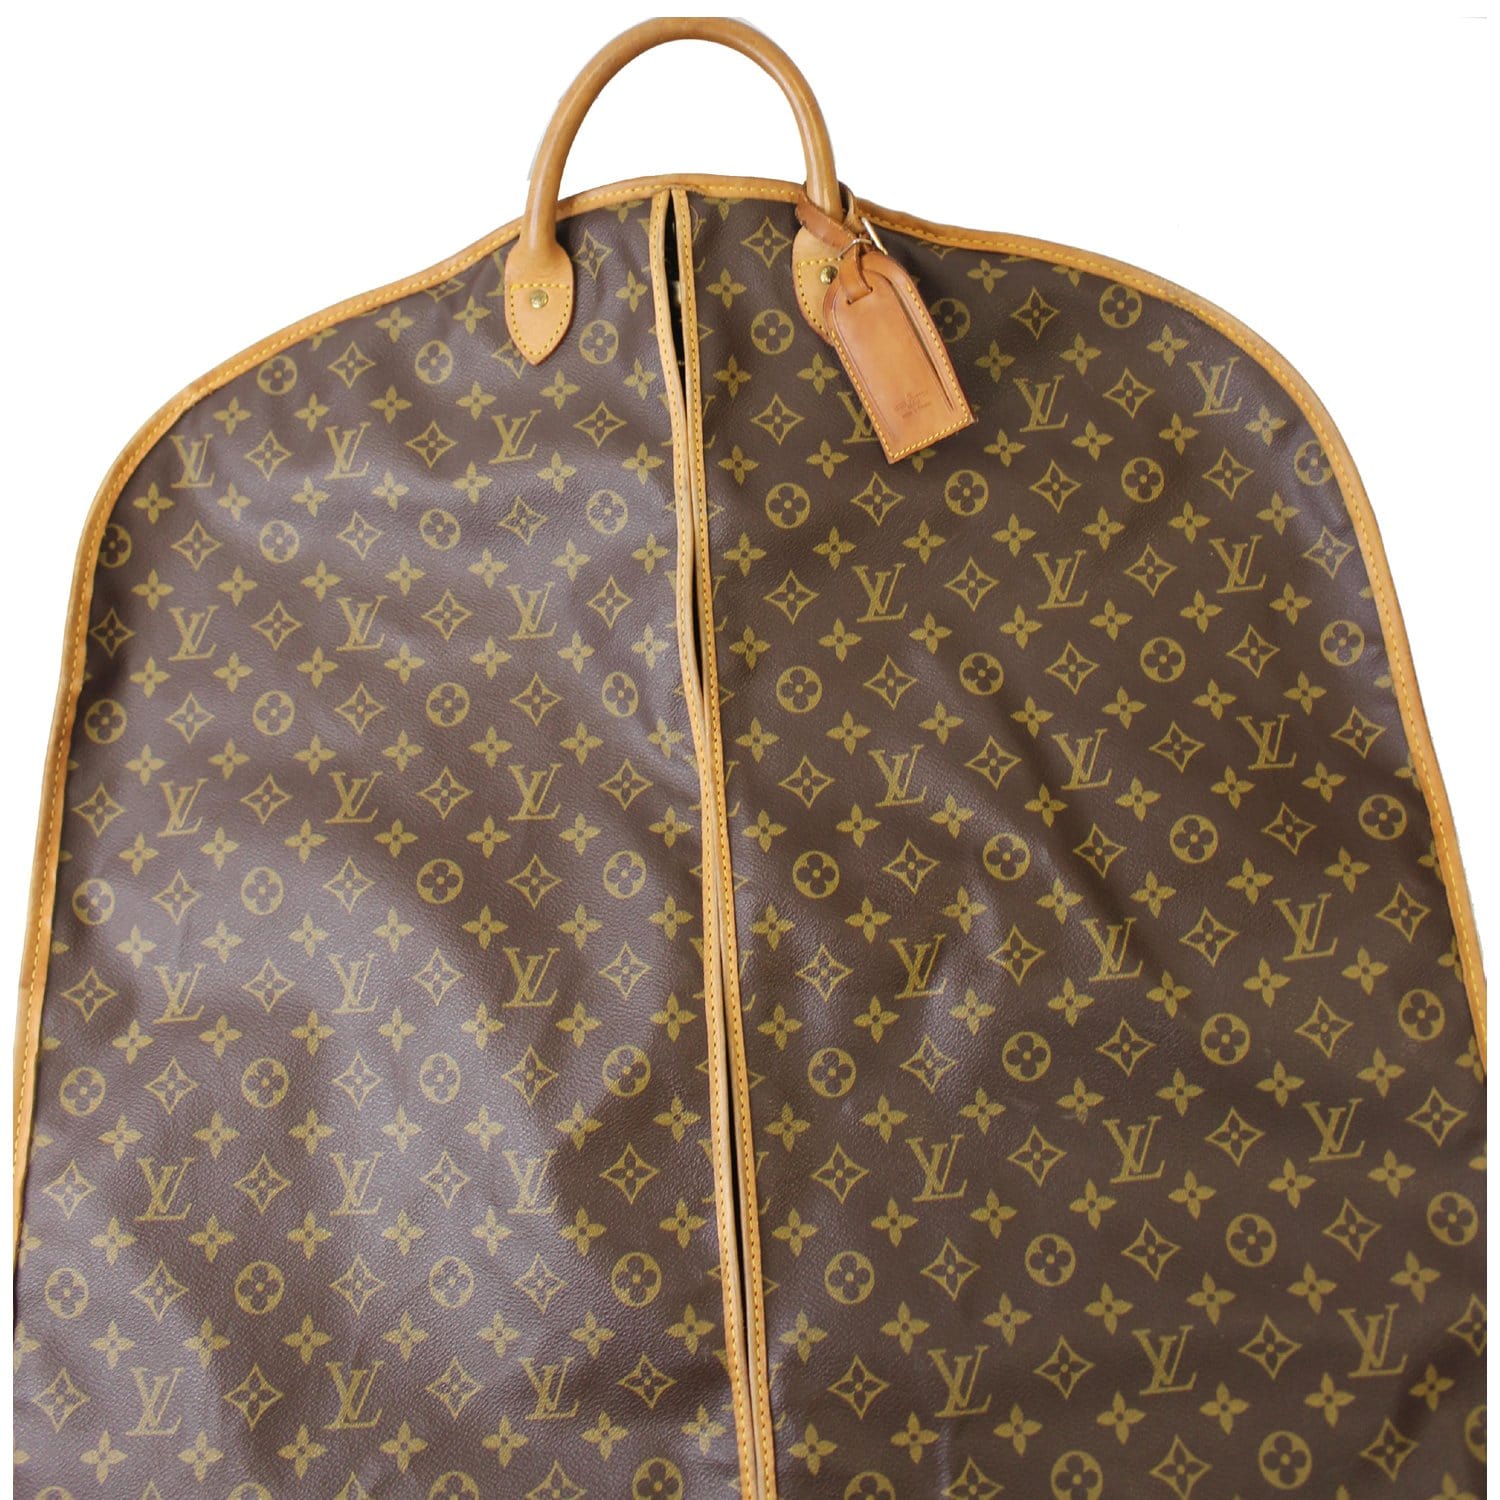 Bel air cloth bag Louis Vuitton Brown in Cloth - 18963682